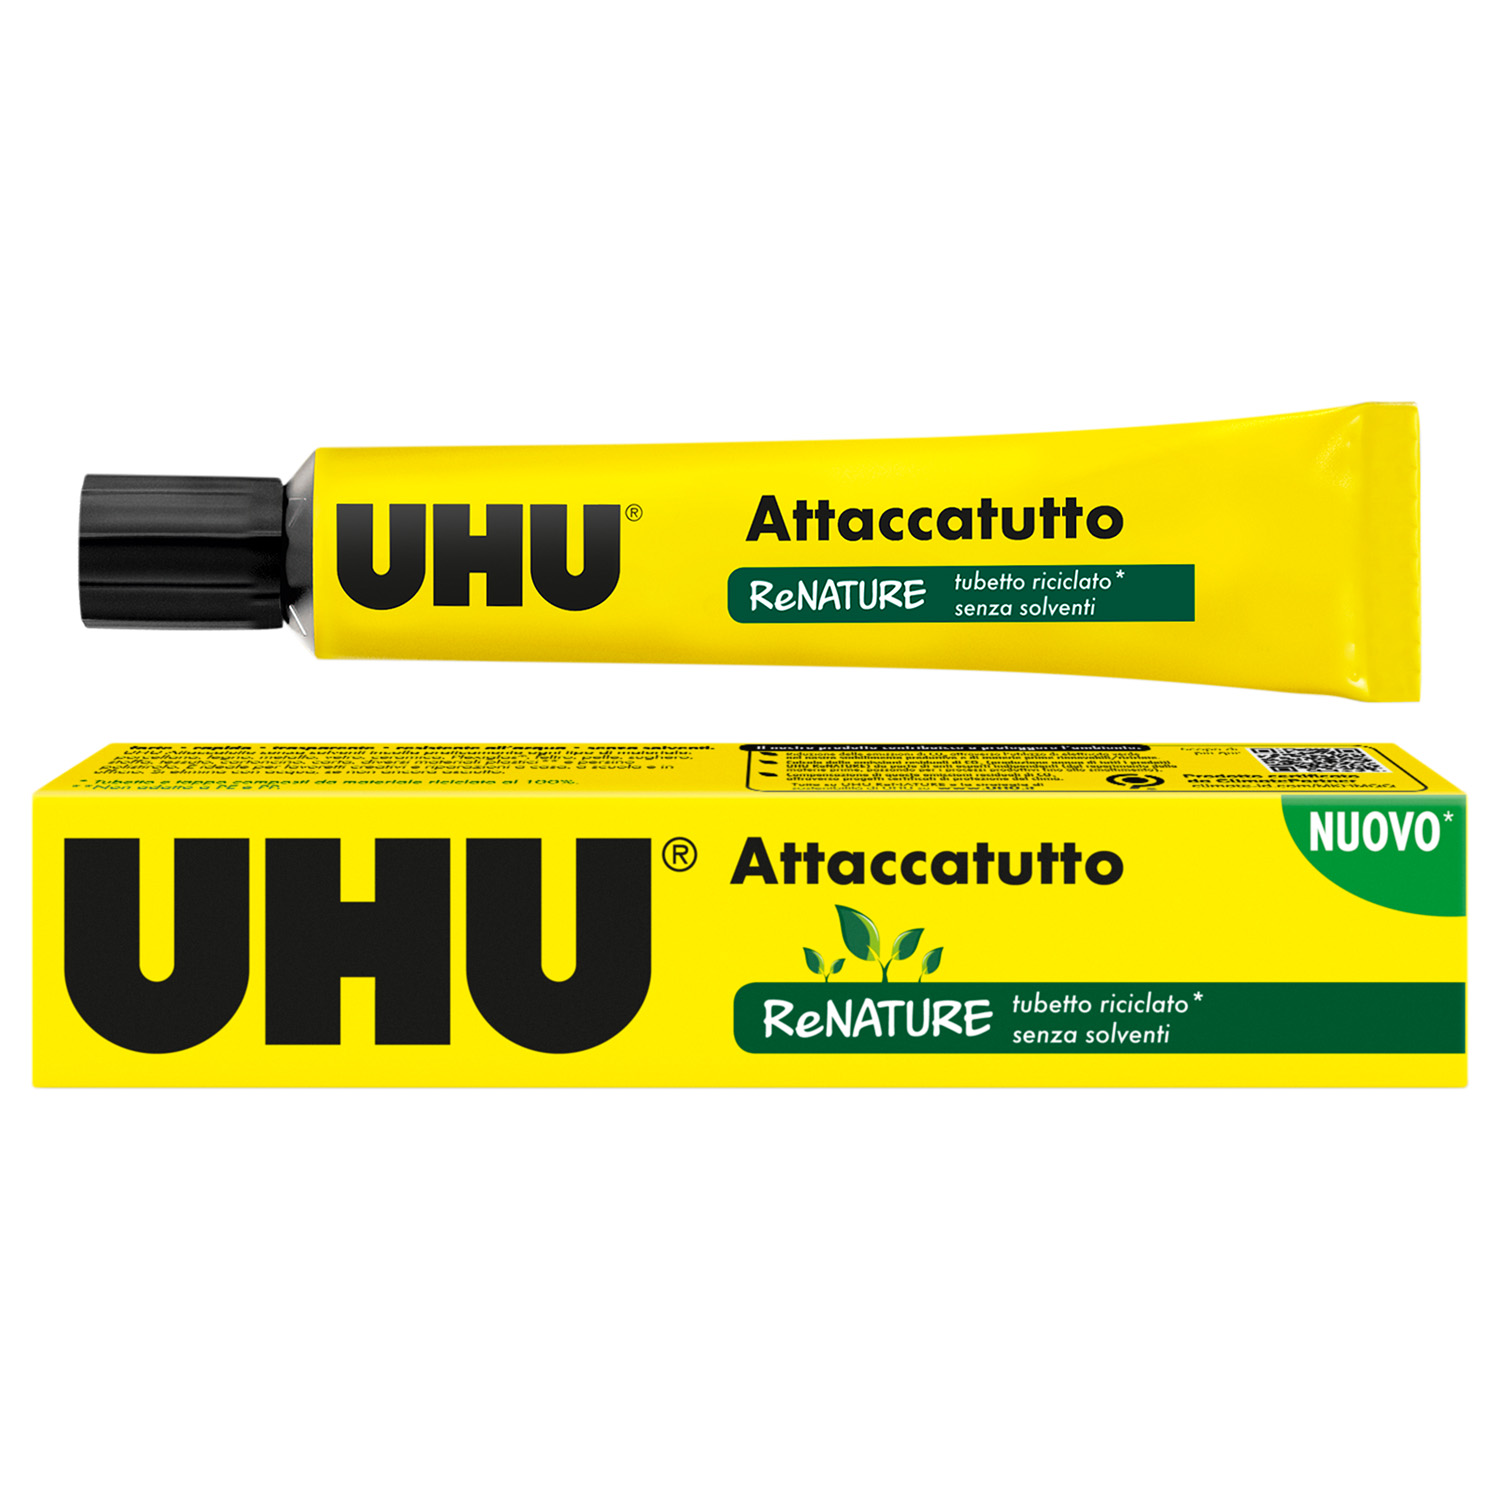 Adesivo attaccatutto senza solventi ad alta tenuta UHU da 20 g